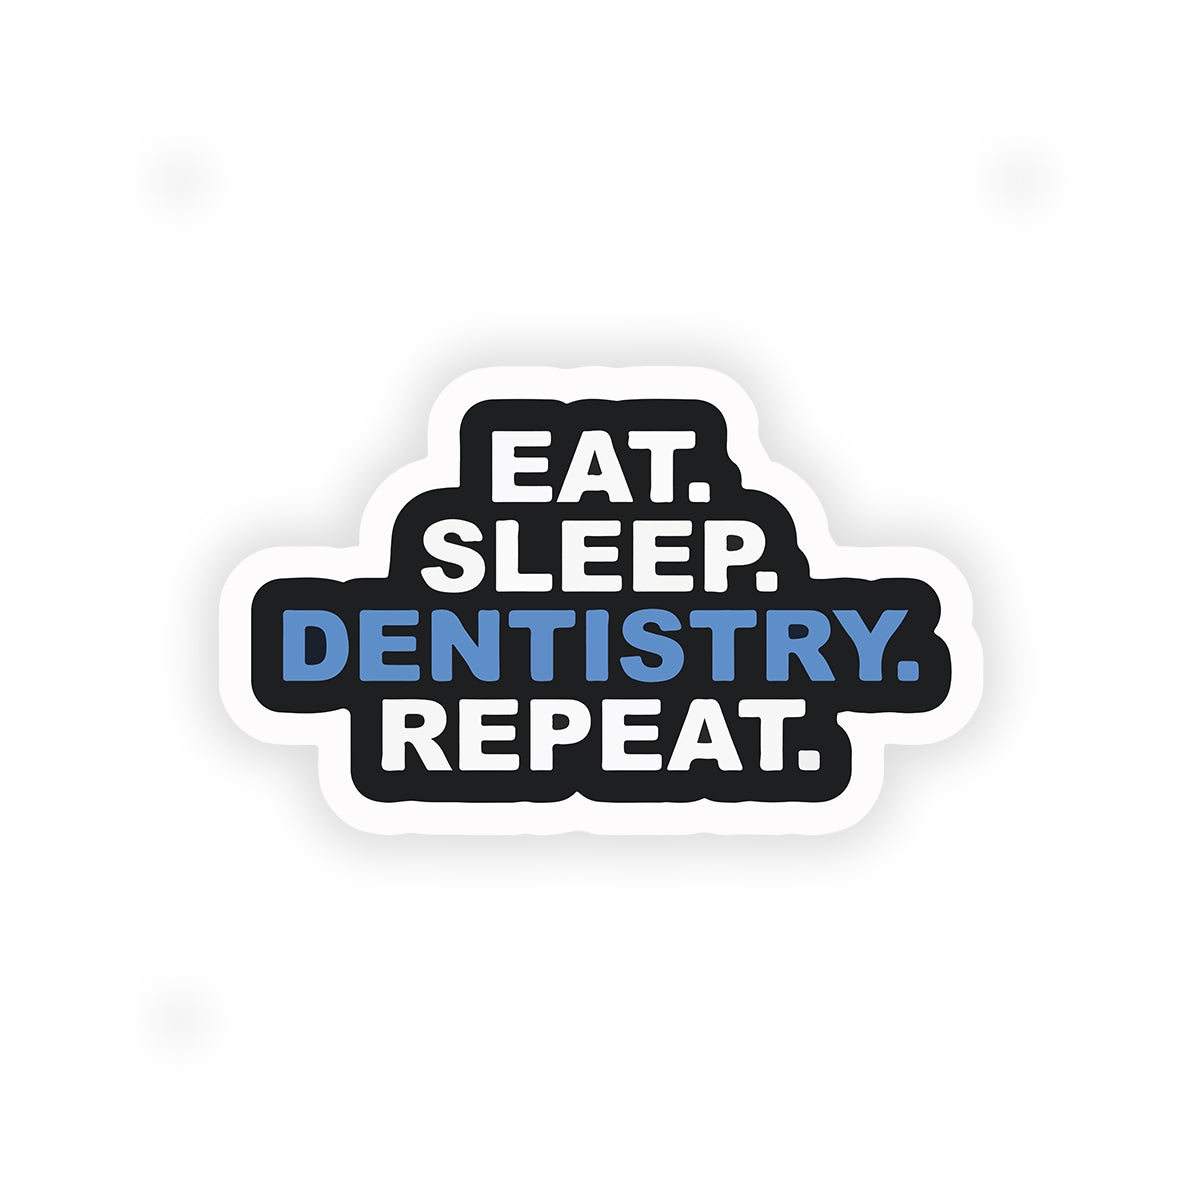 Eat sleep dentistry repeat